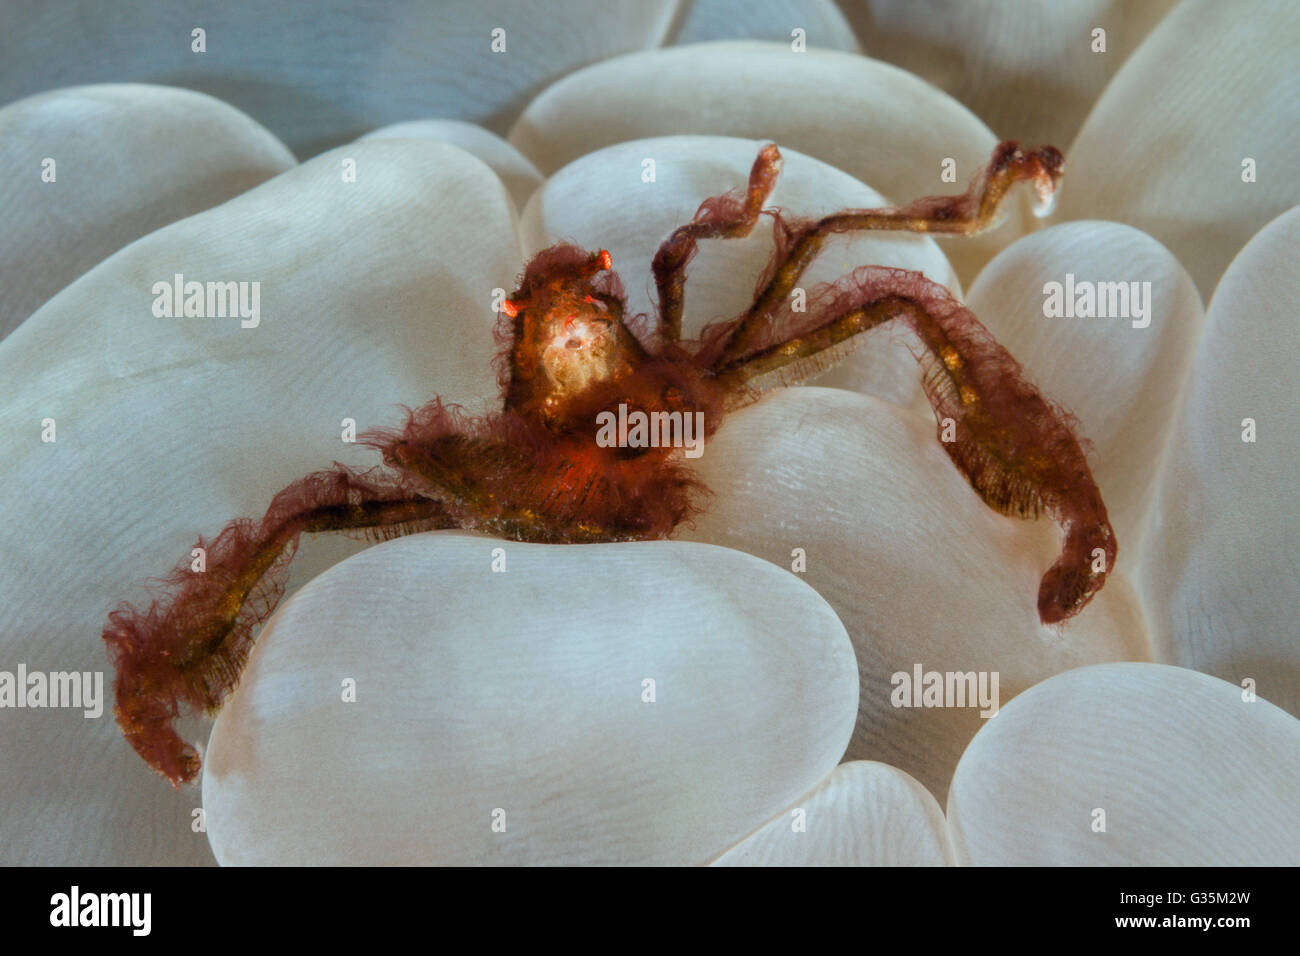 Orangutan Crab in Bubble Coral, Achaeus japonicus, Komodo National Park, Indonesia Stock Photo